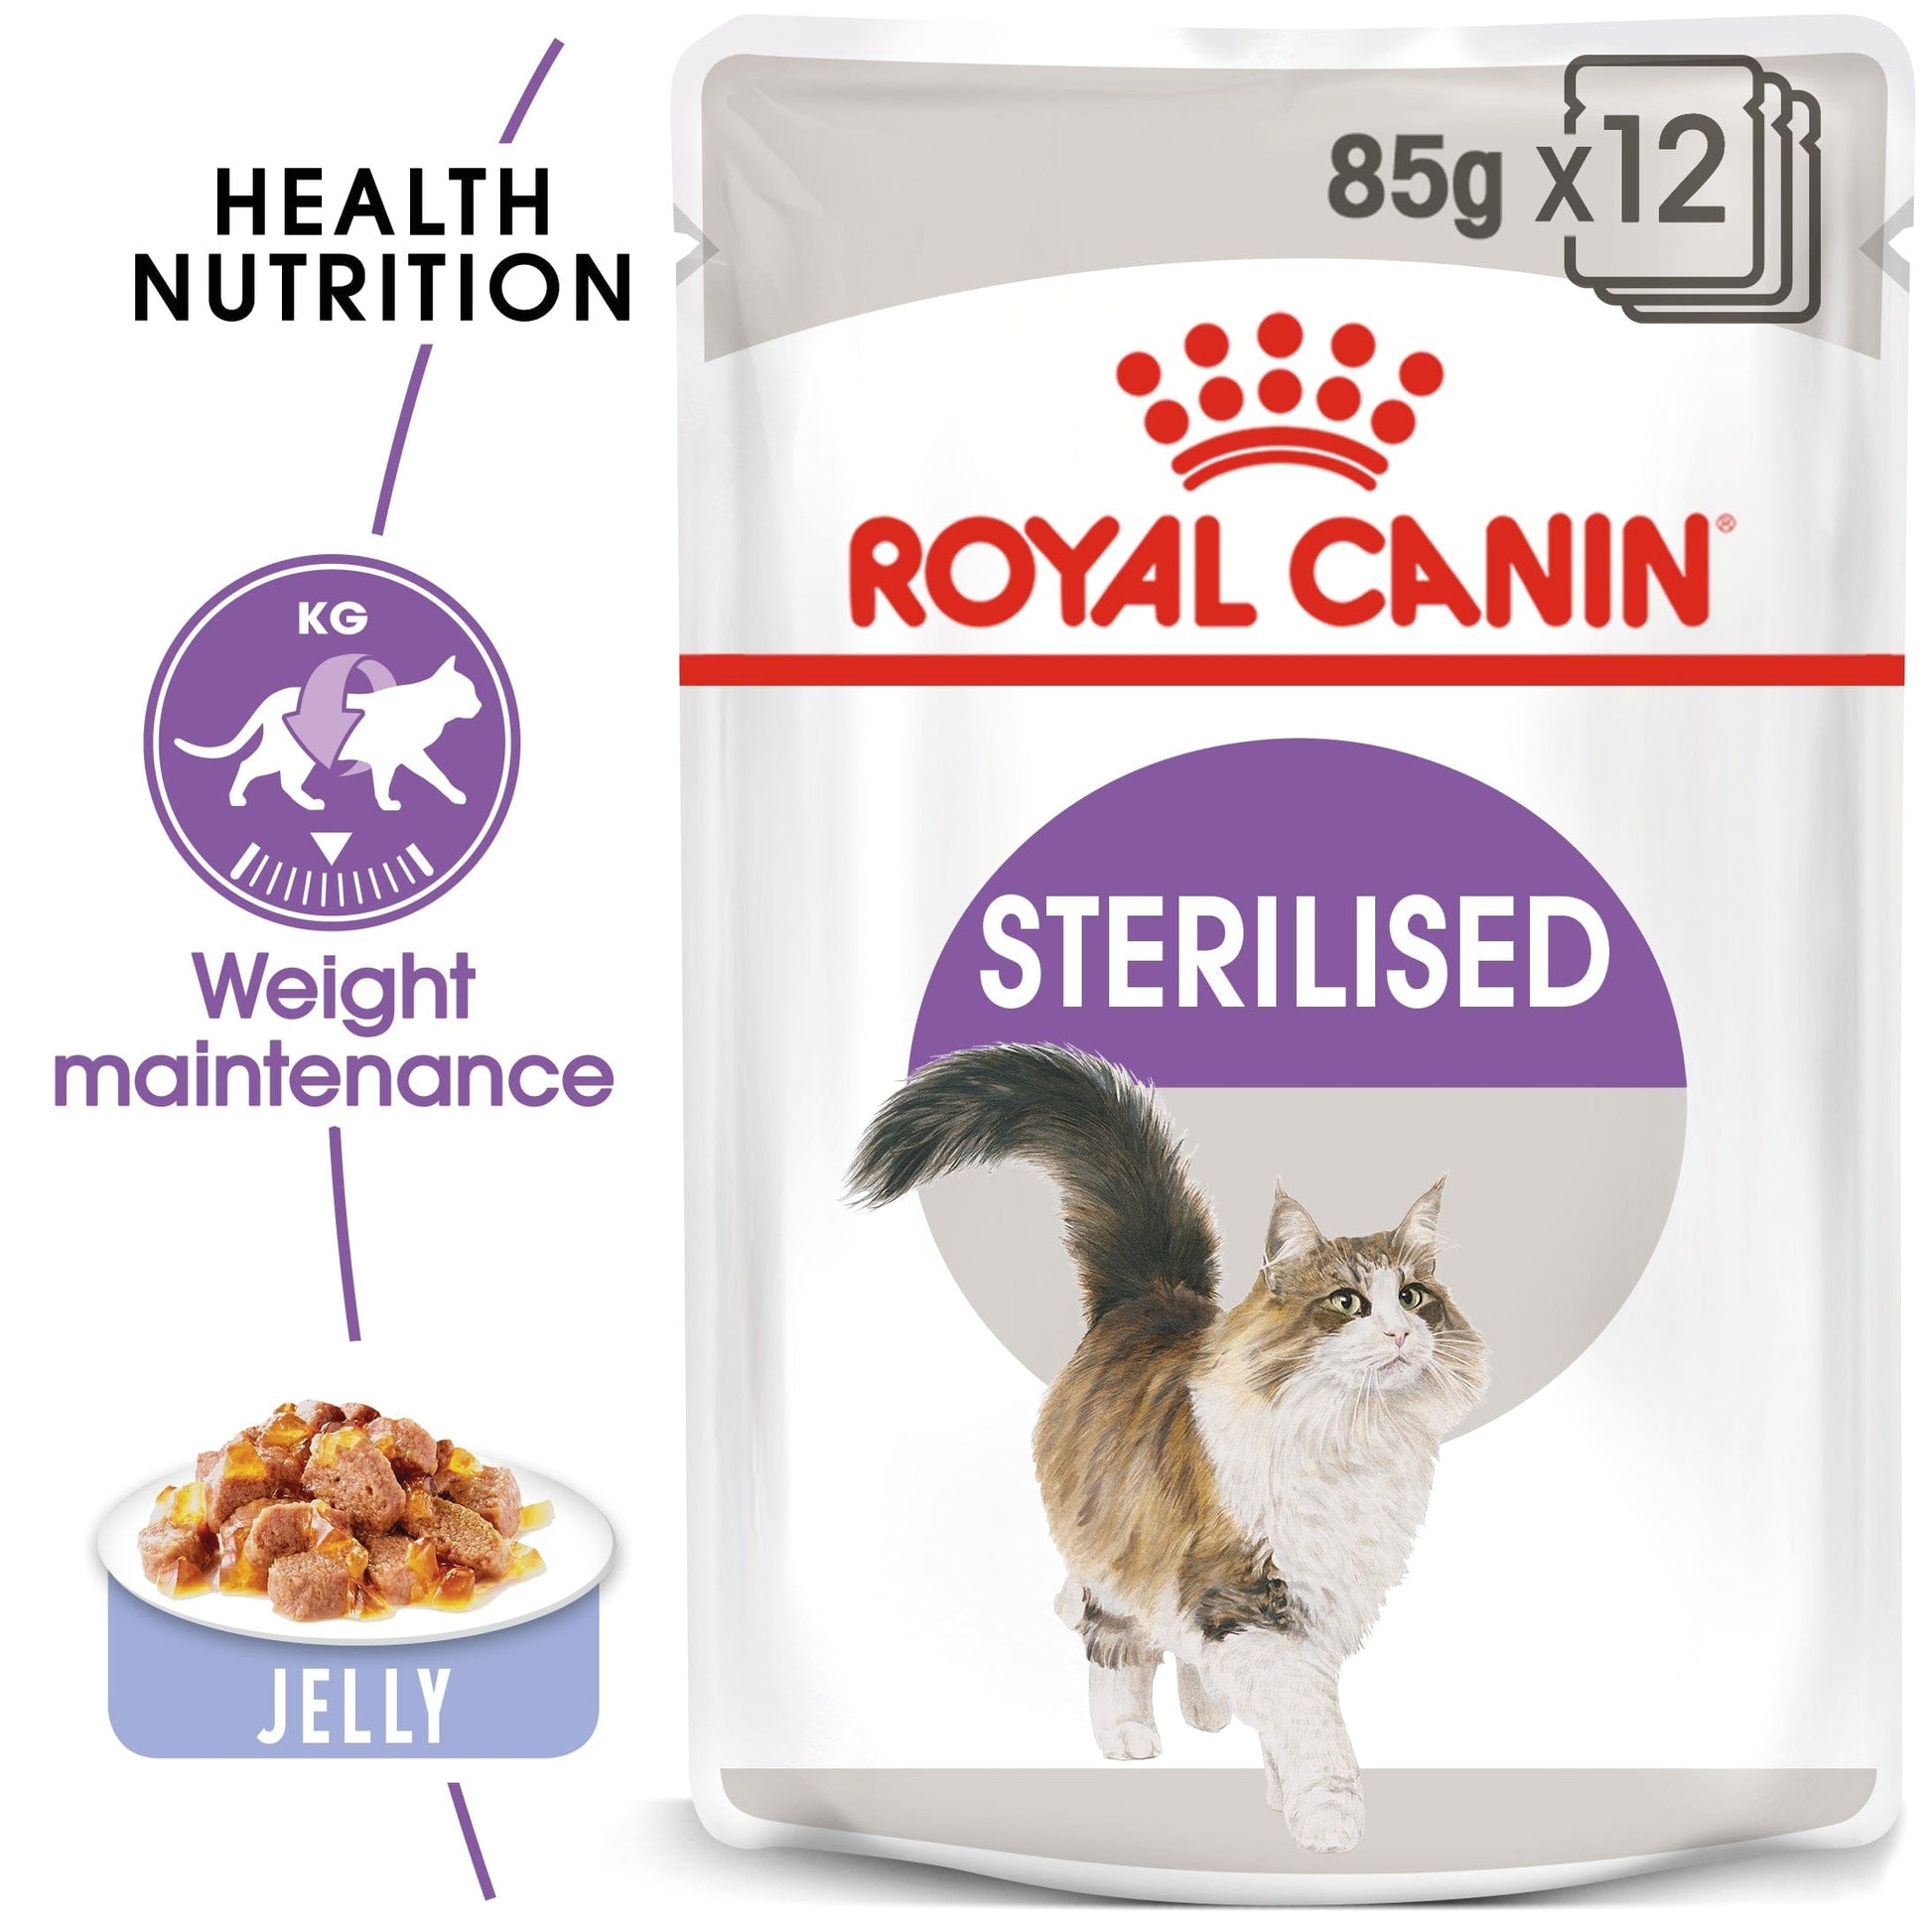 Royal Canin Feline Health Nutrition Sterilised Jelly Wet Food Pouch, 85g